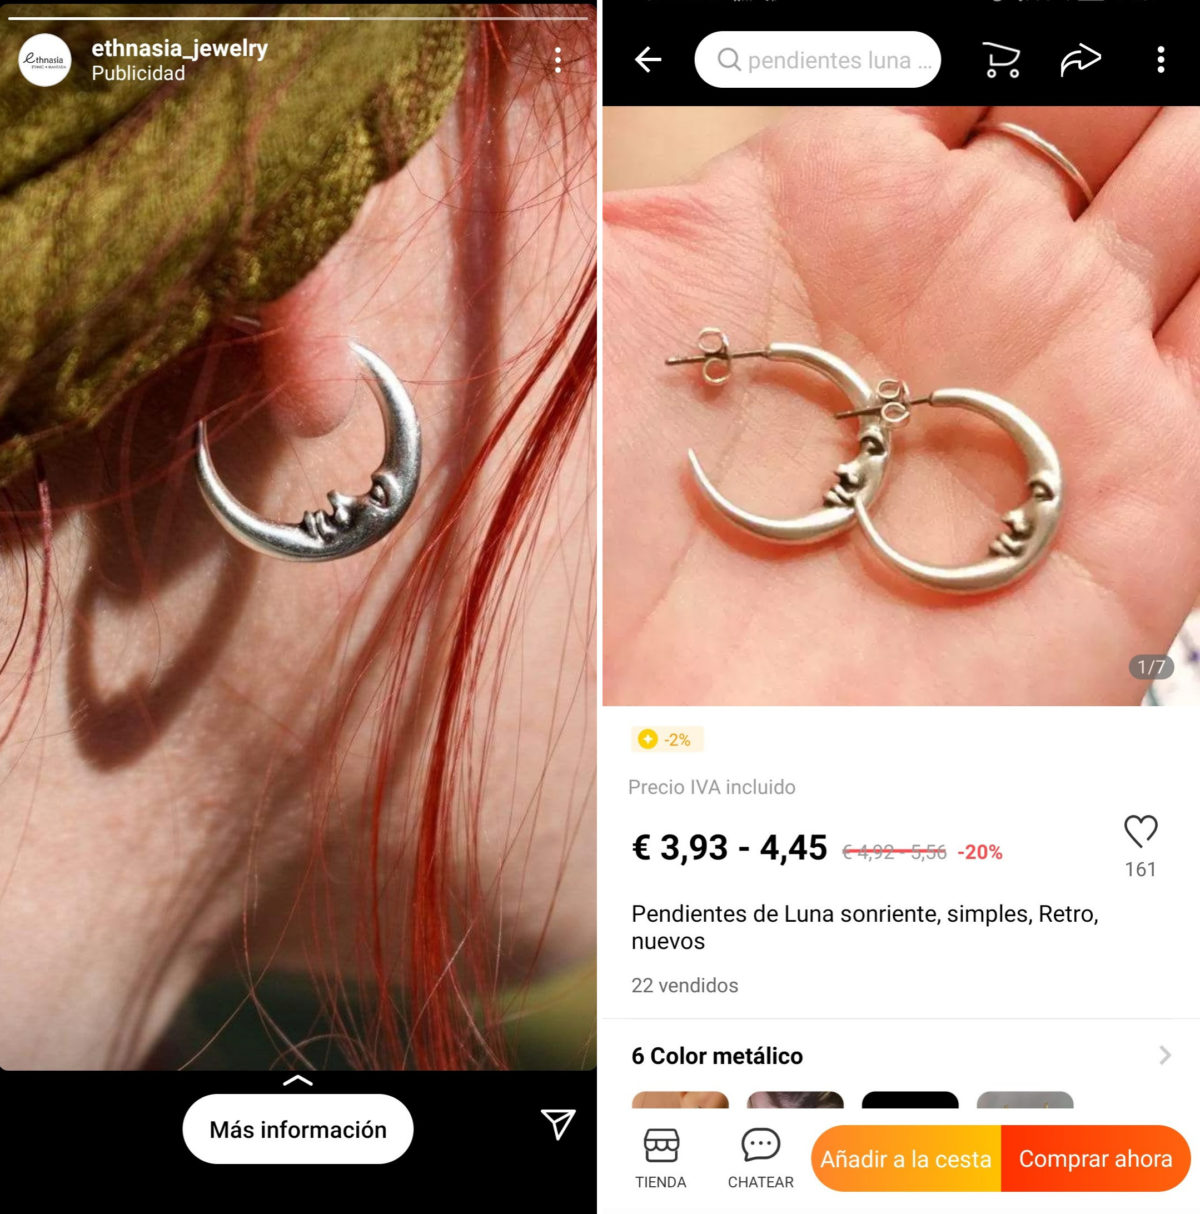 cheaper-earrings-on-aliexpress-than-instagram